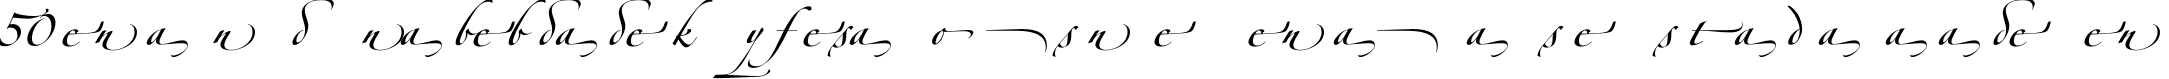 Пример написания шрифтом Zapfino Forte LT Alternate текста на испанском